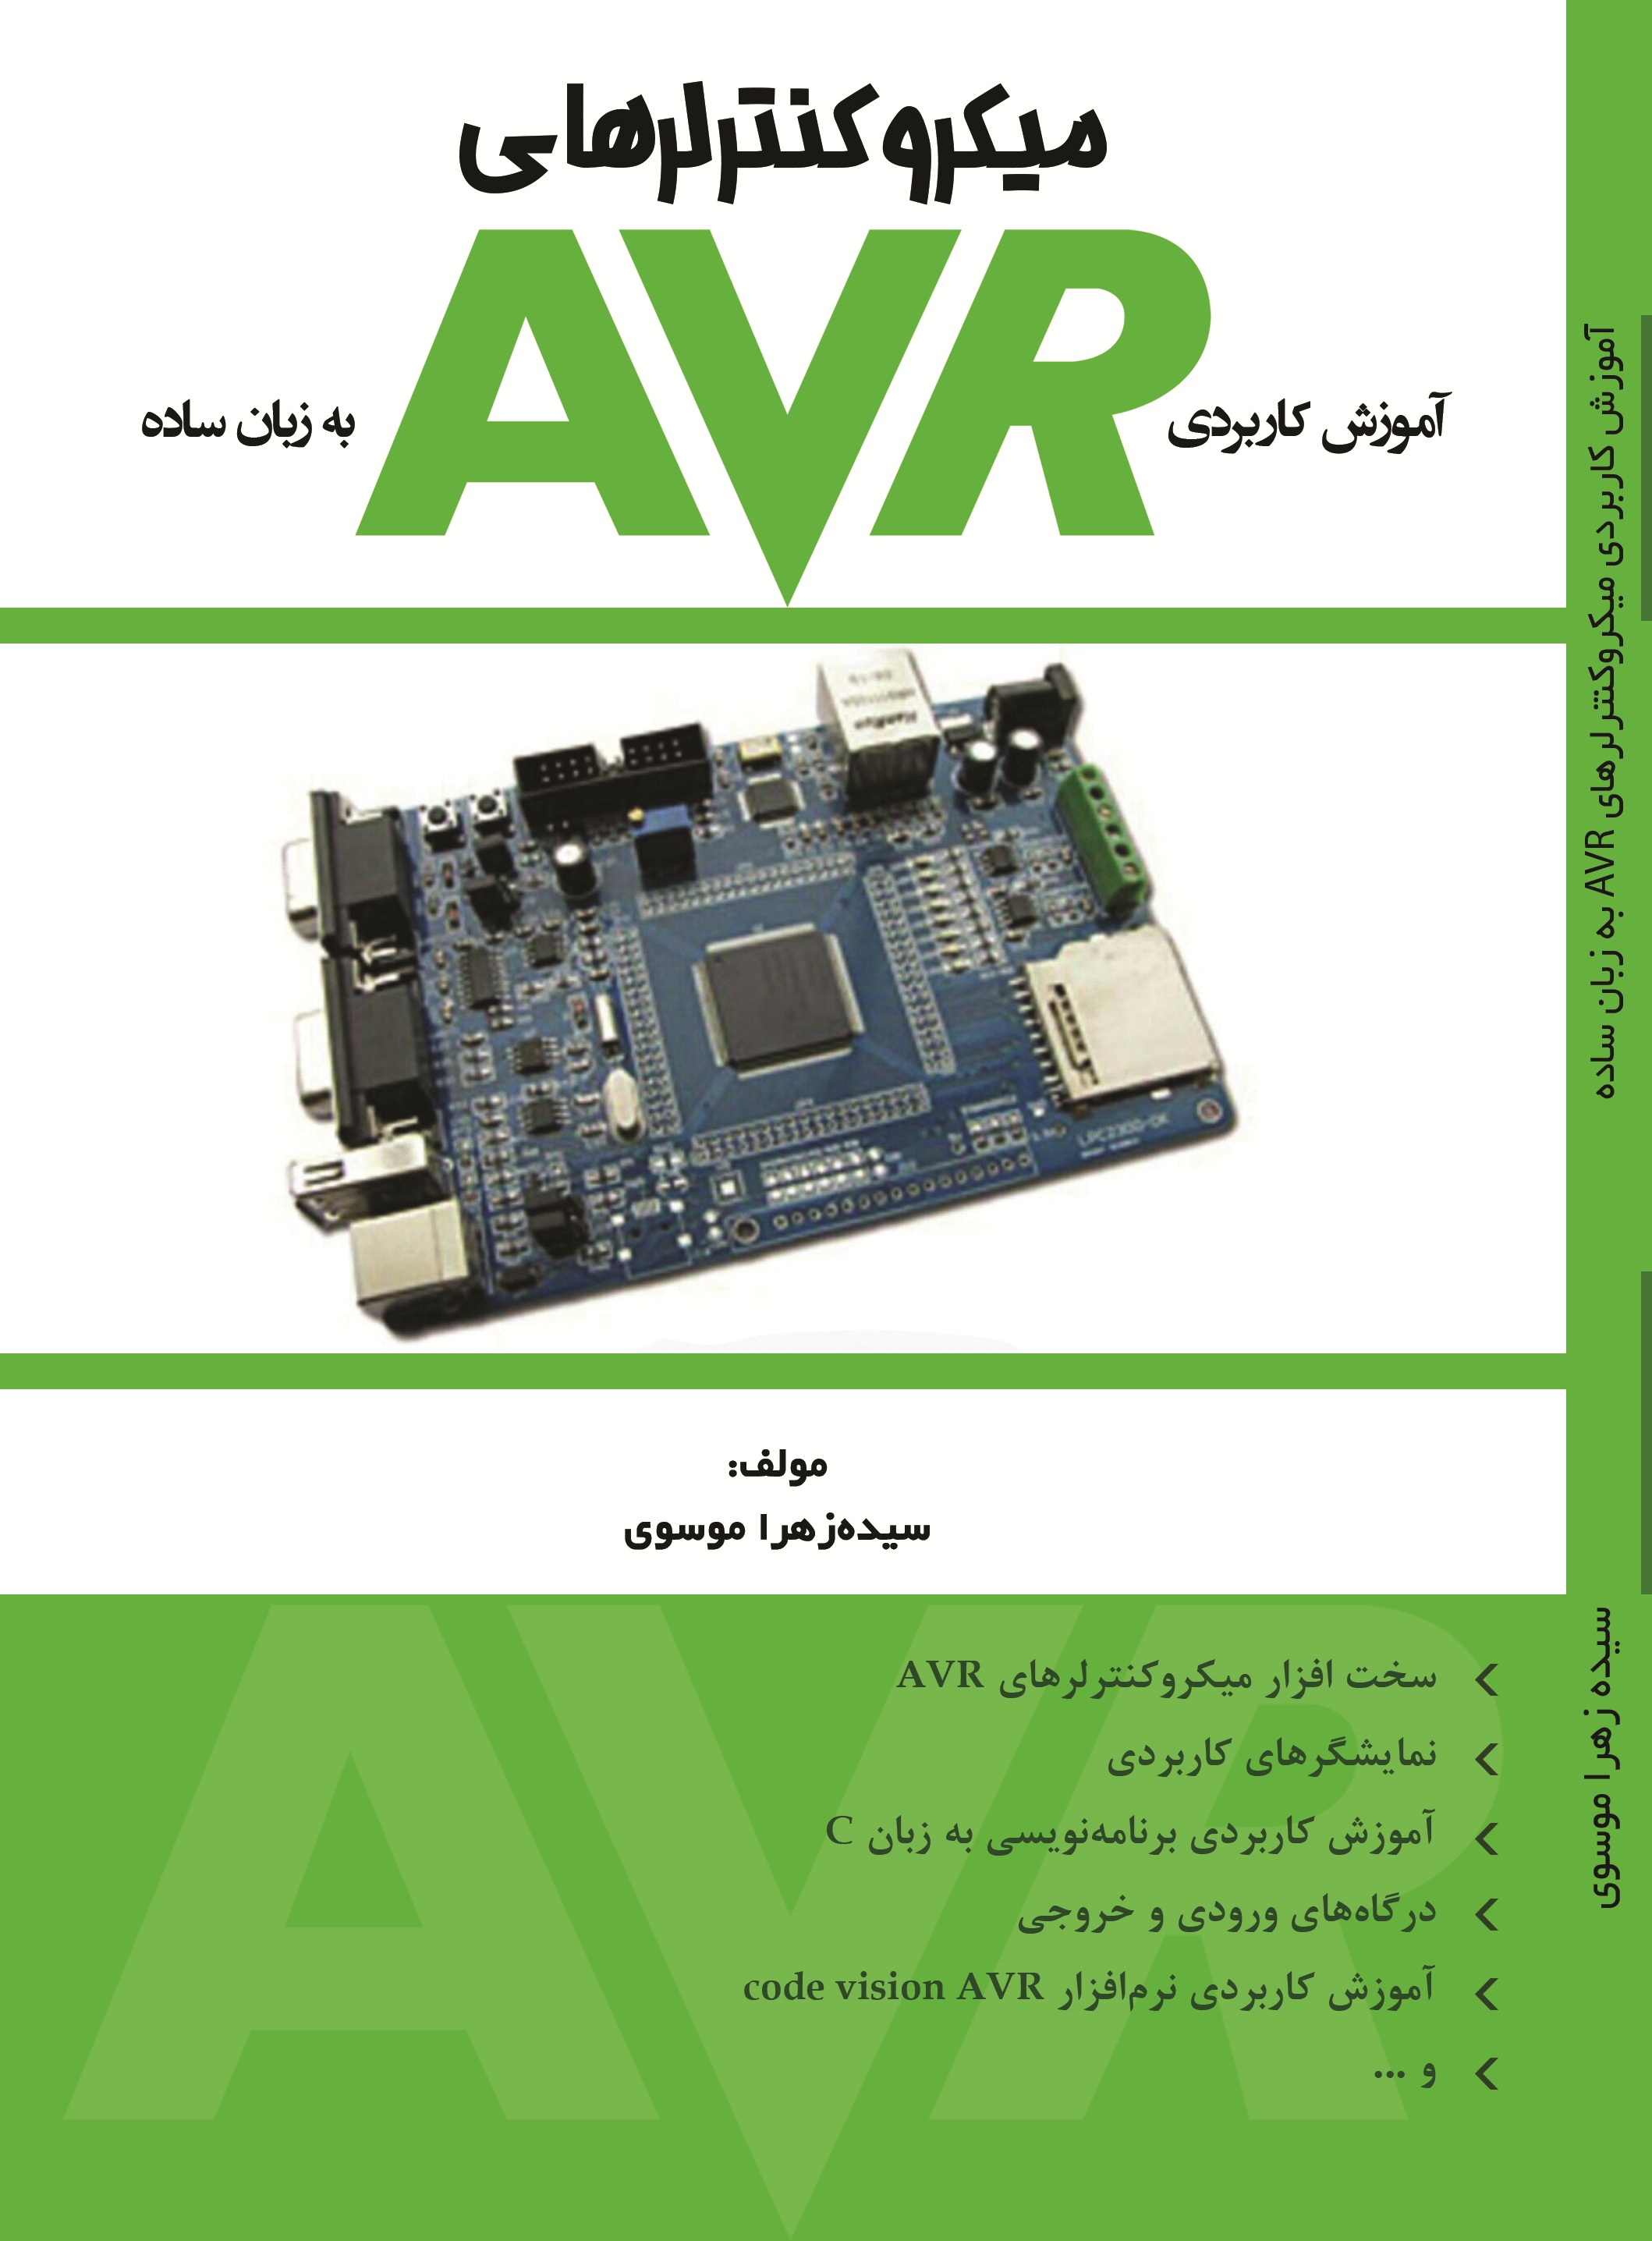 آموزش کاربردی میکروکنترلرهای AVR به زبان ساده